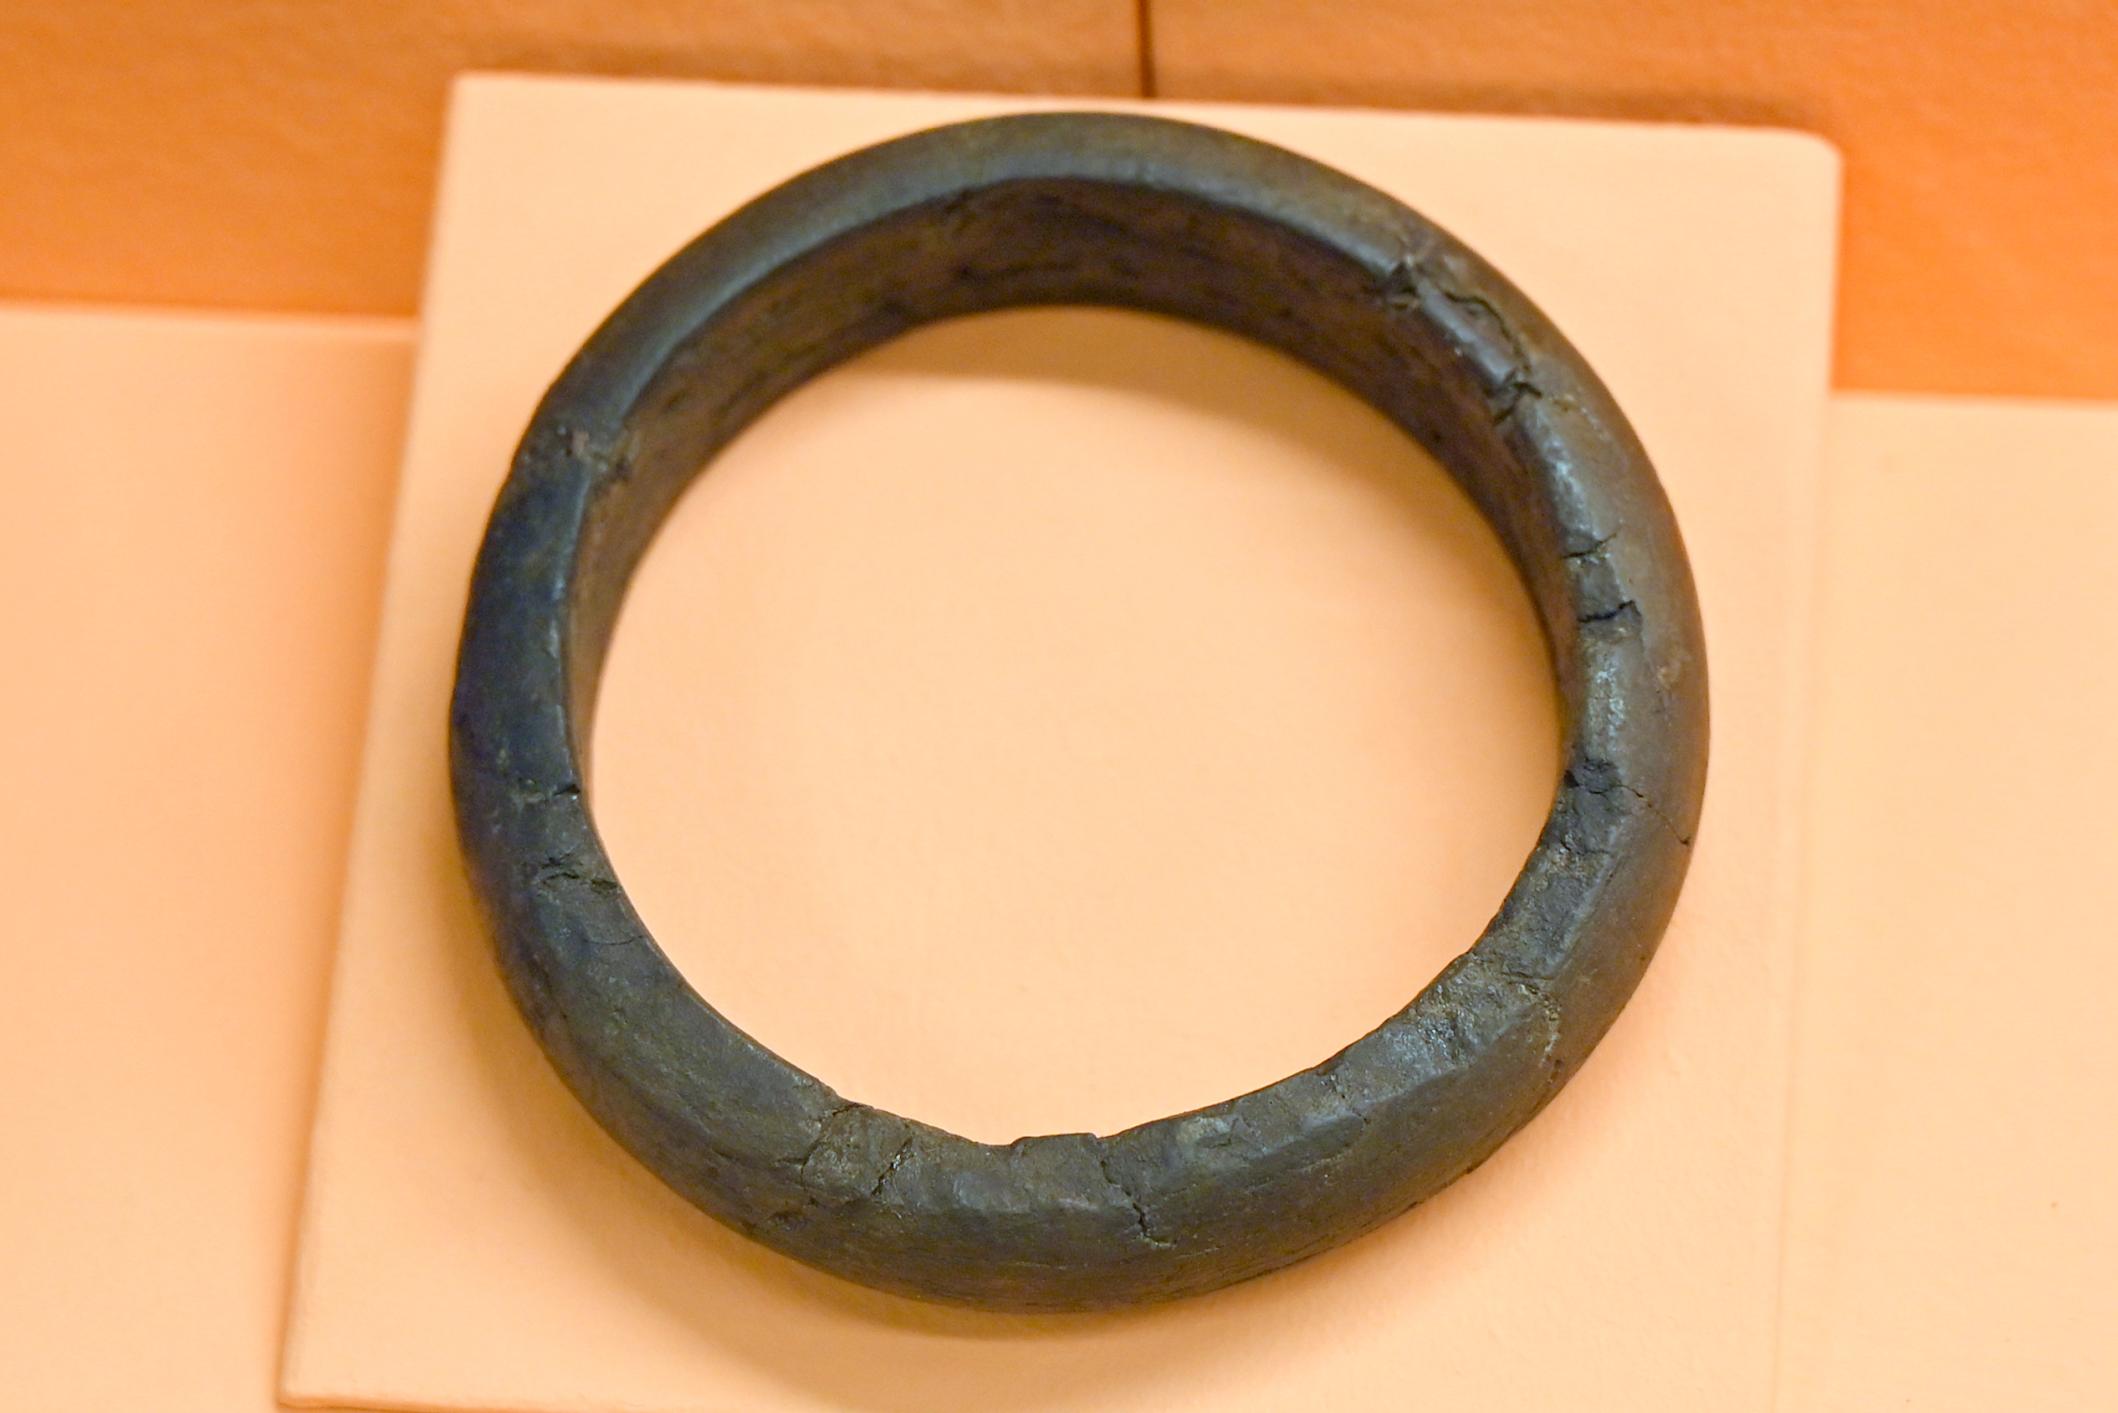 Armring aus Xylit (Holz aus der Braunkohle), Hallstattzeit, 700 - 200 v. Chr., Bild 1/2